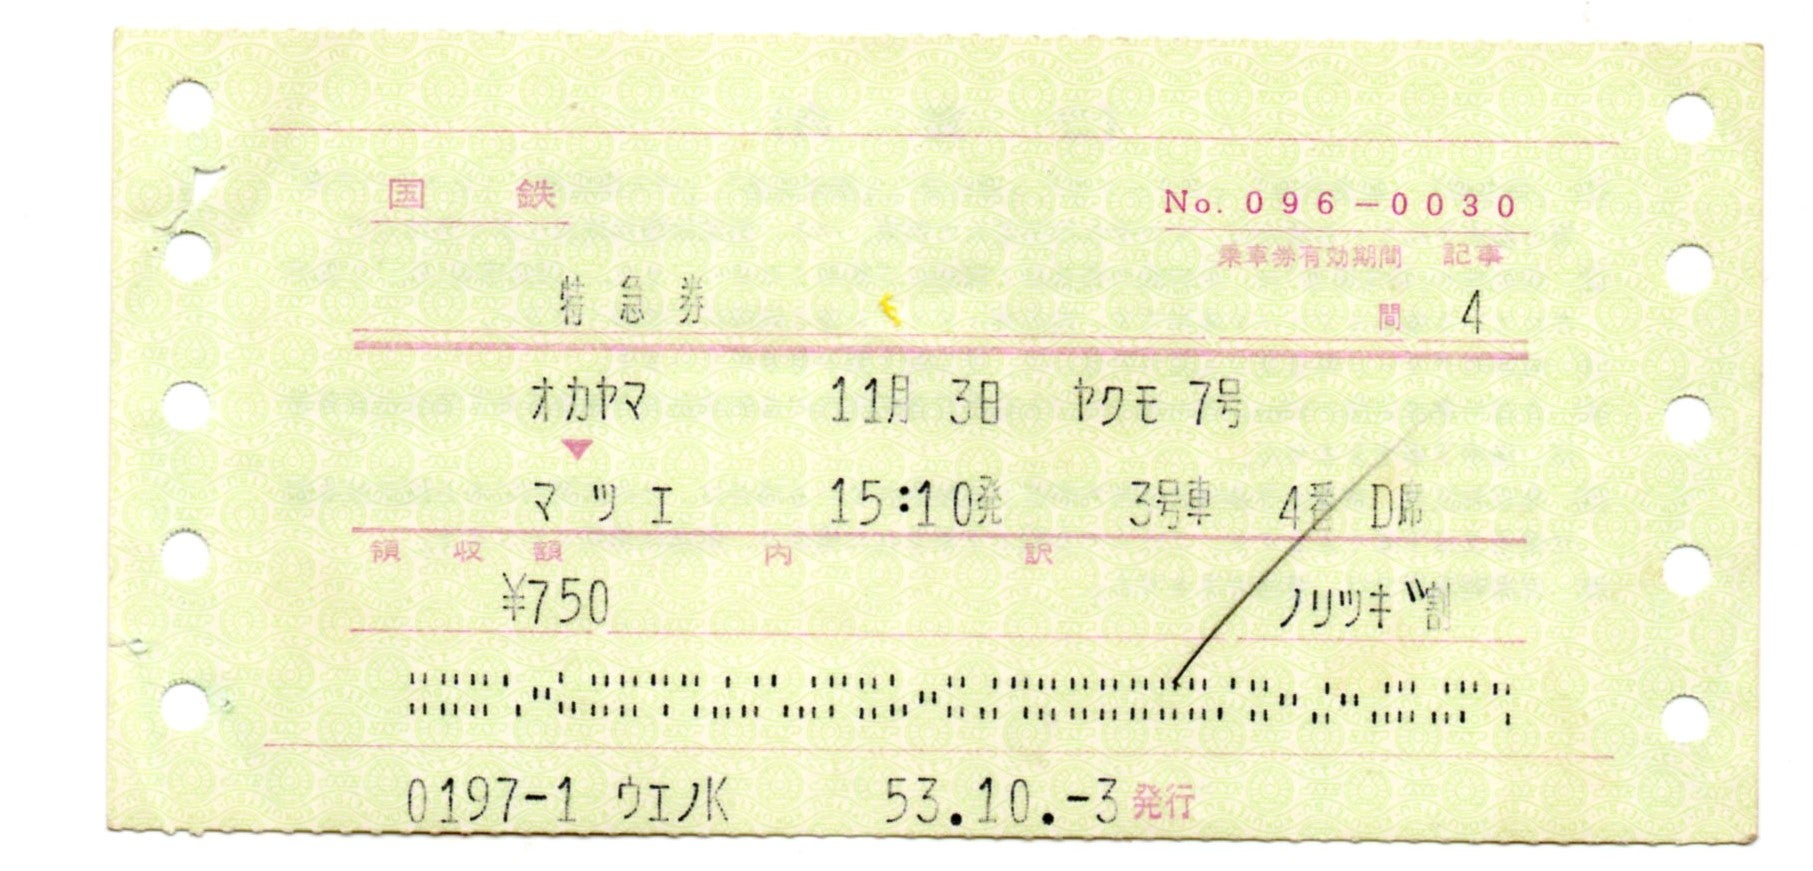 切符で見る 国鉄・JR 特急列車 特別な急行だった時代④ 各種昼行特急券 